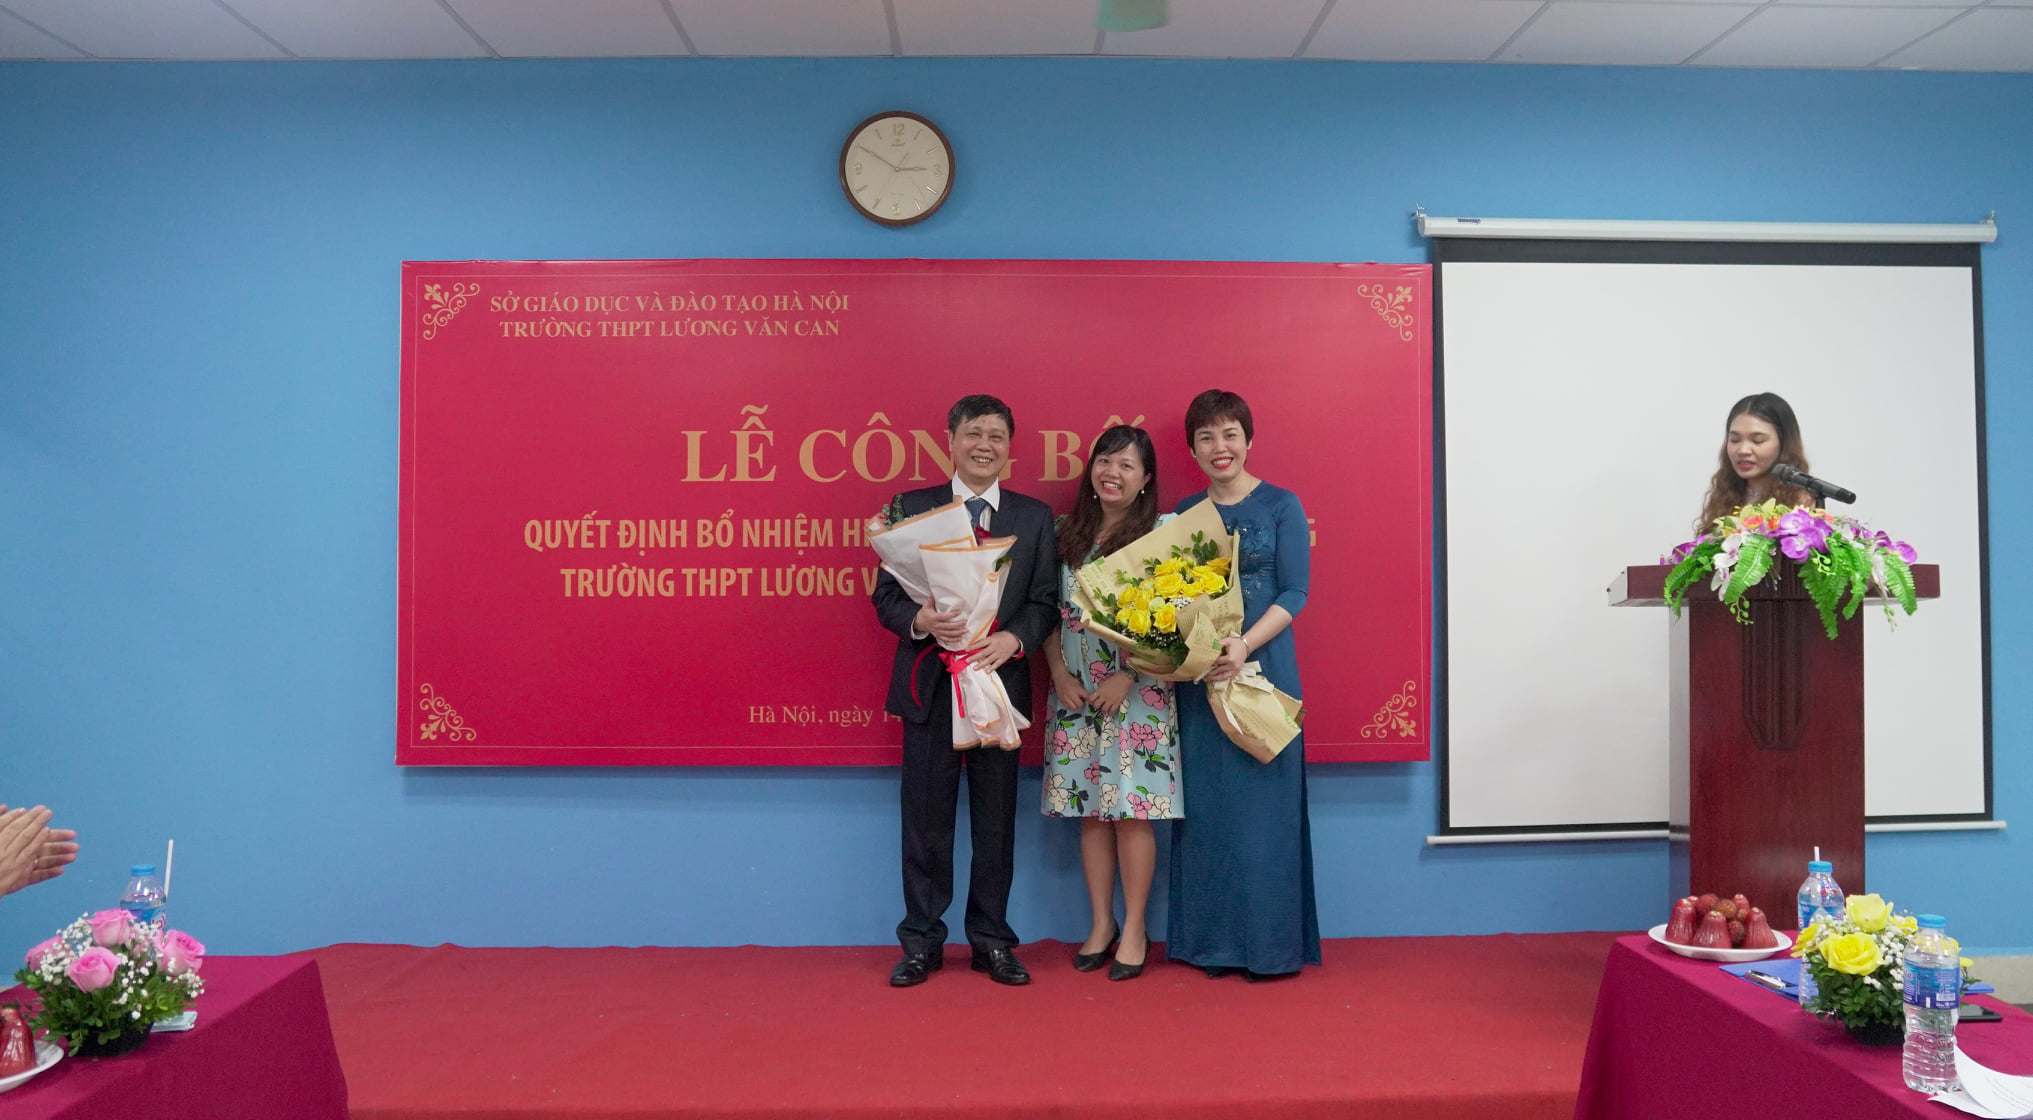 Phó hiệu trưởng - Cô Nguyễn Thị Ngát tặng hoa tân hiệu trưởng và tân hiệu phó